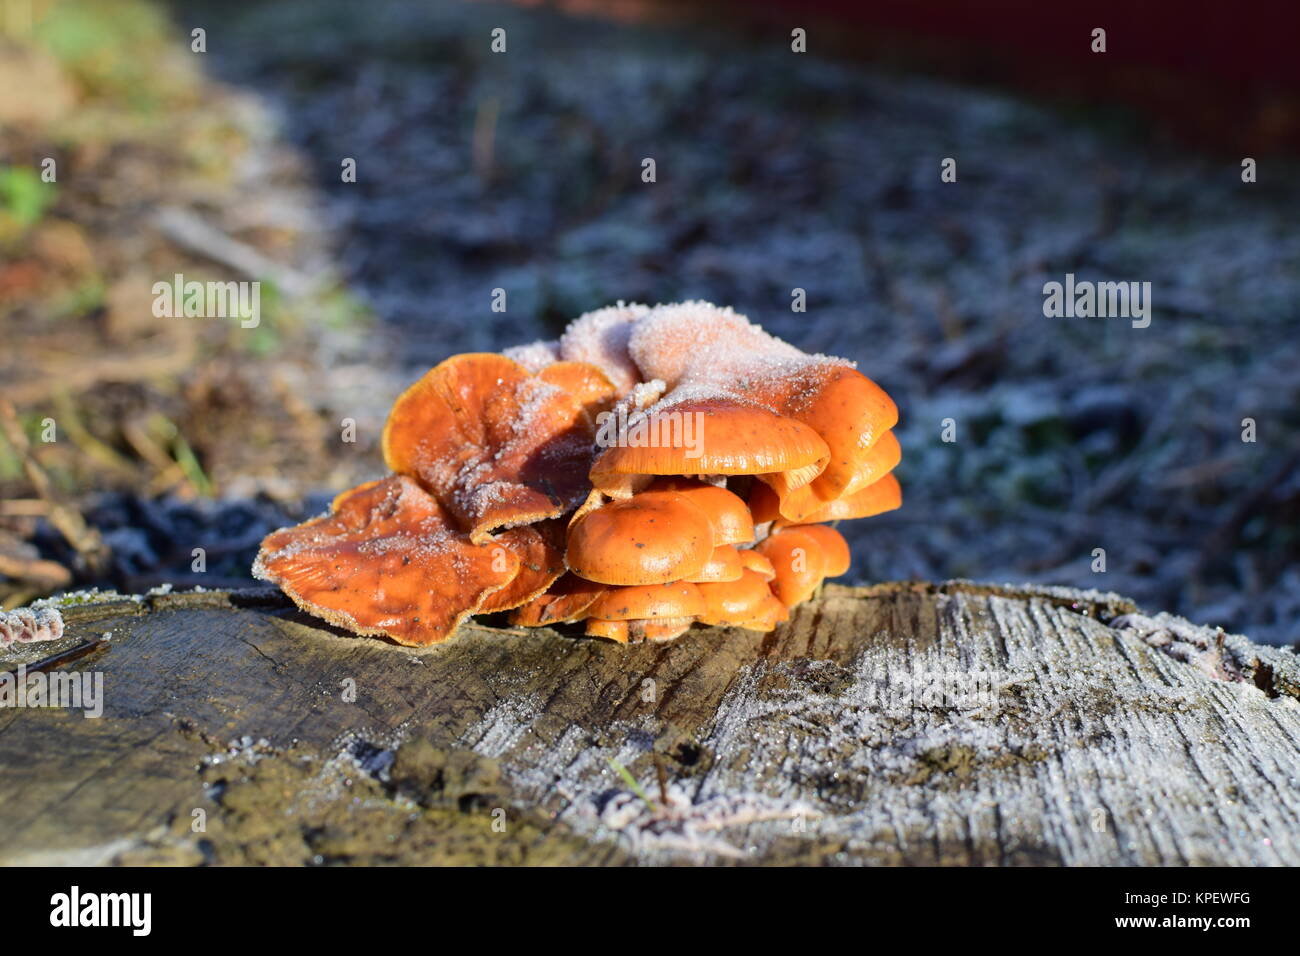 Orange mushrooms on a stub Stock Photo